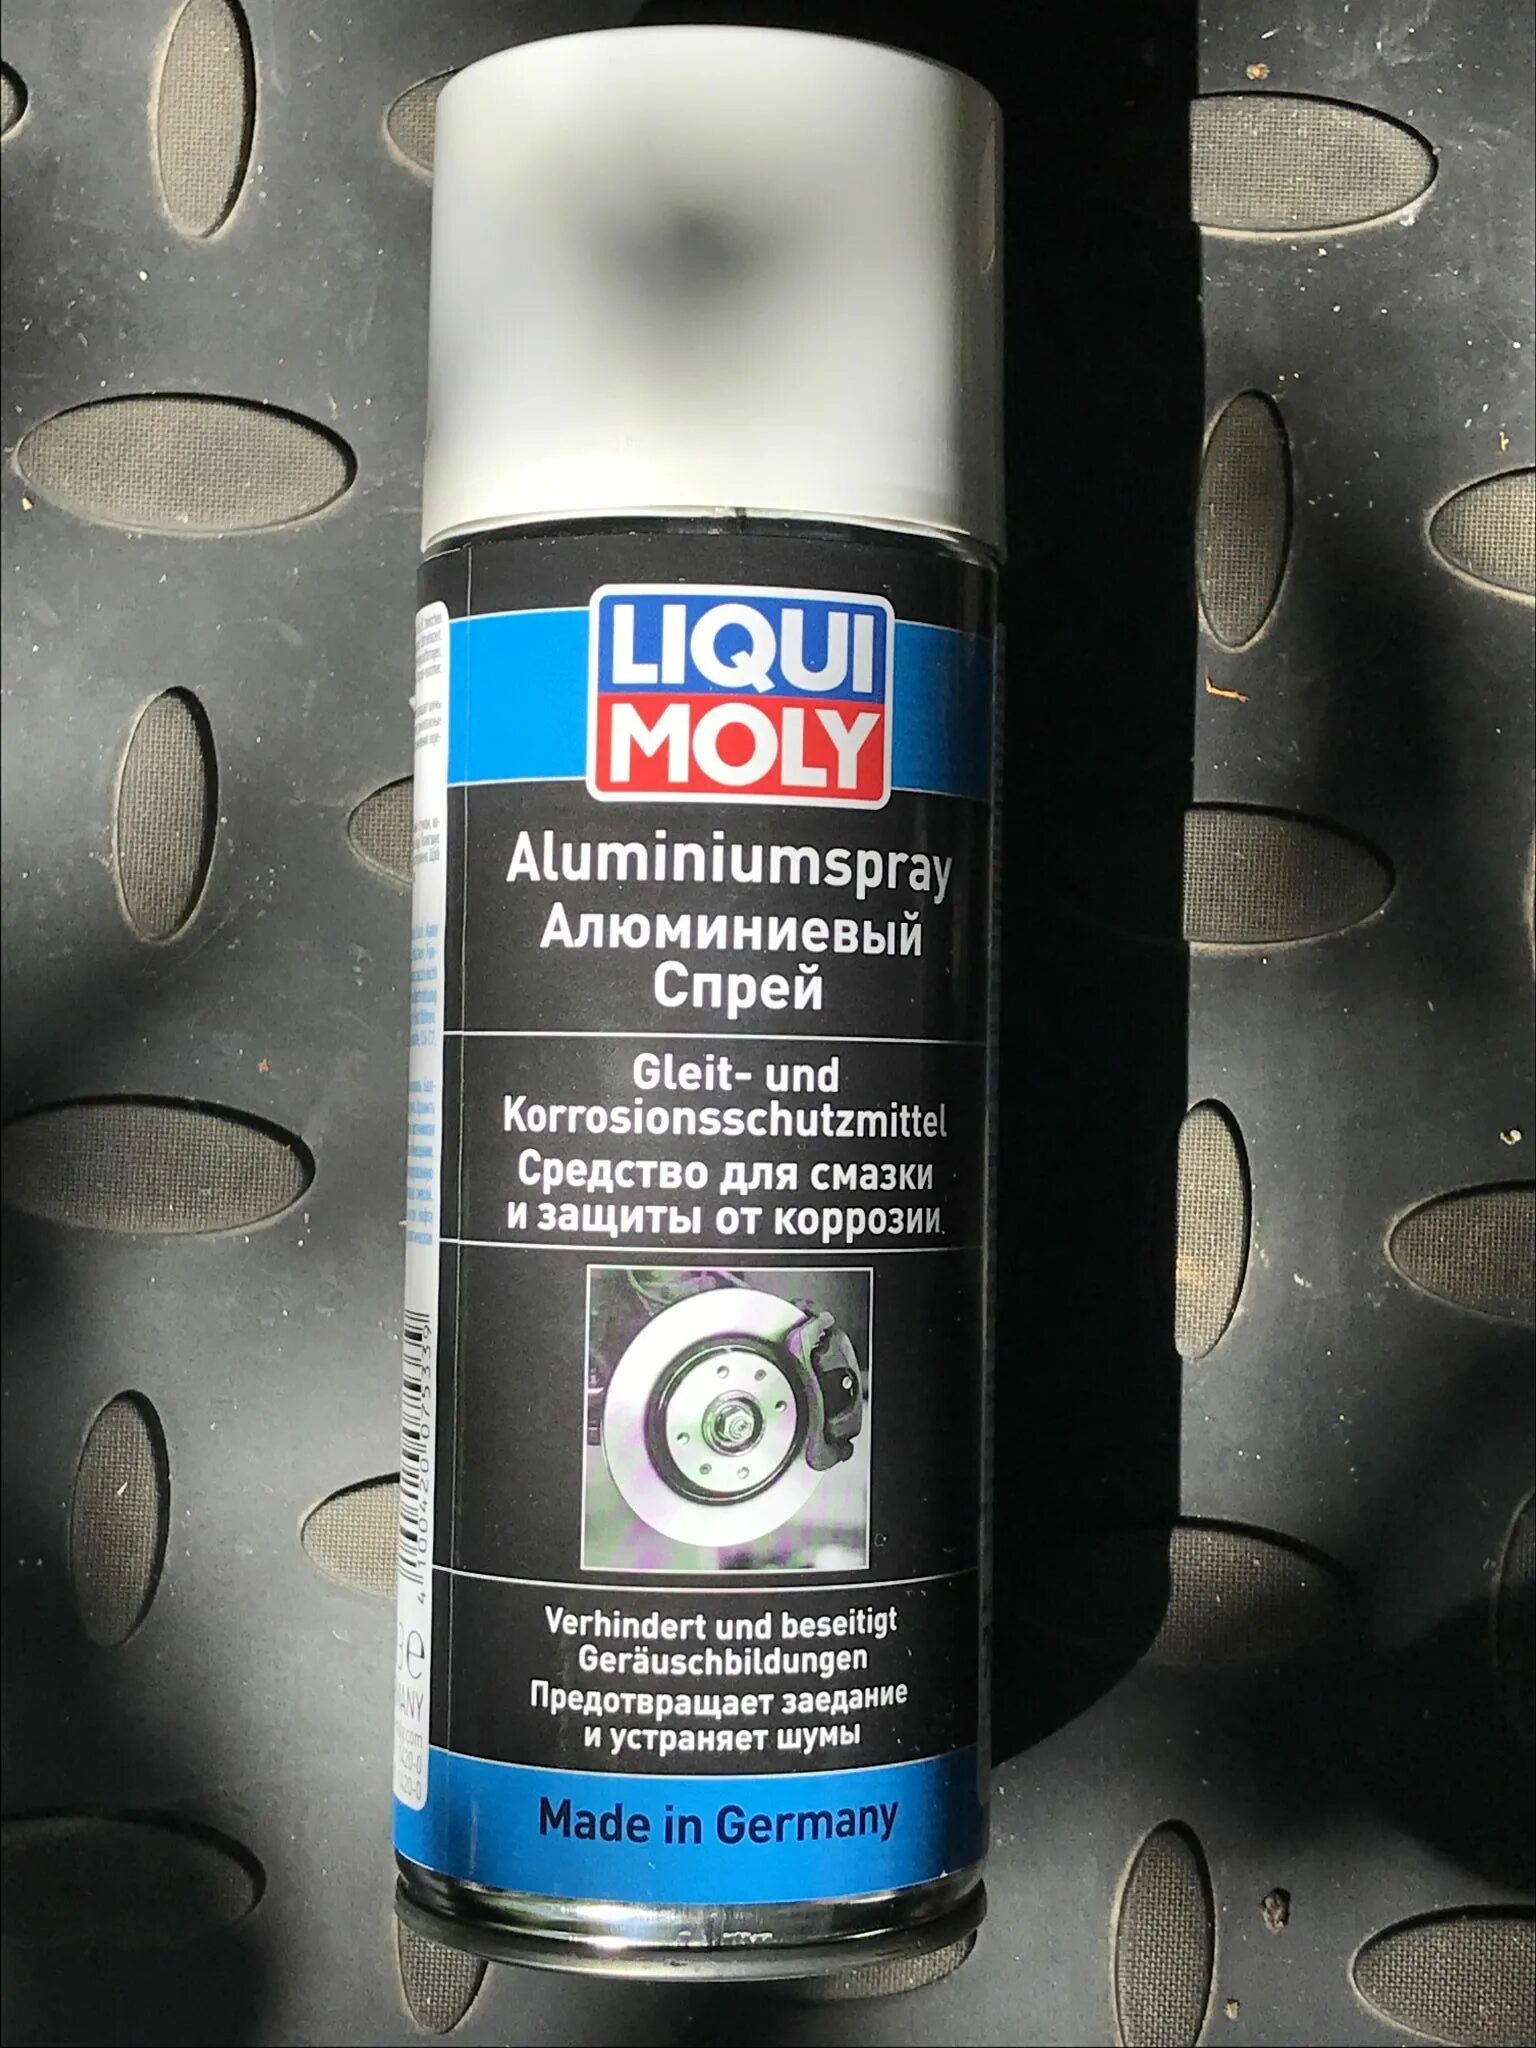 Liqui Moly Aluminium-Spray. 7533 Liqui Moly. Смазка Liqui Moly Aluminium-Spray. Ликви Молли алюминиевая смазка.